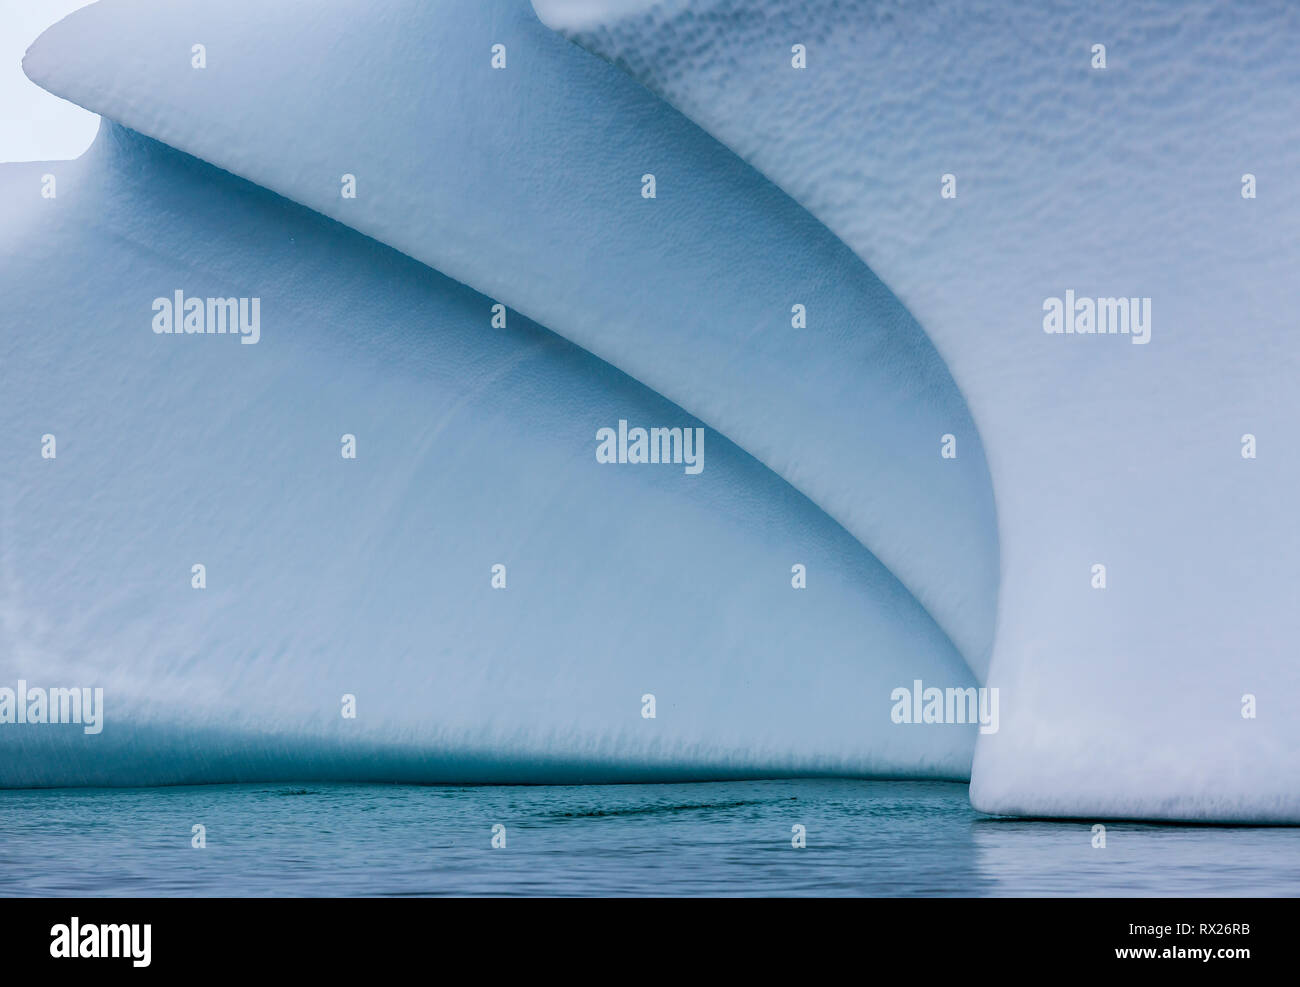 Un iceberg a terra rivela belle e morbide linee curving come si deteriorano lentamente in acque poco profonde vicino all'isola di Pleneau. Penisola Antartica, Antartide. Foto Stock